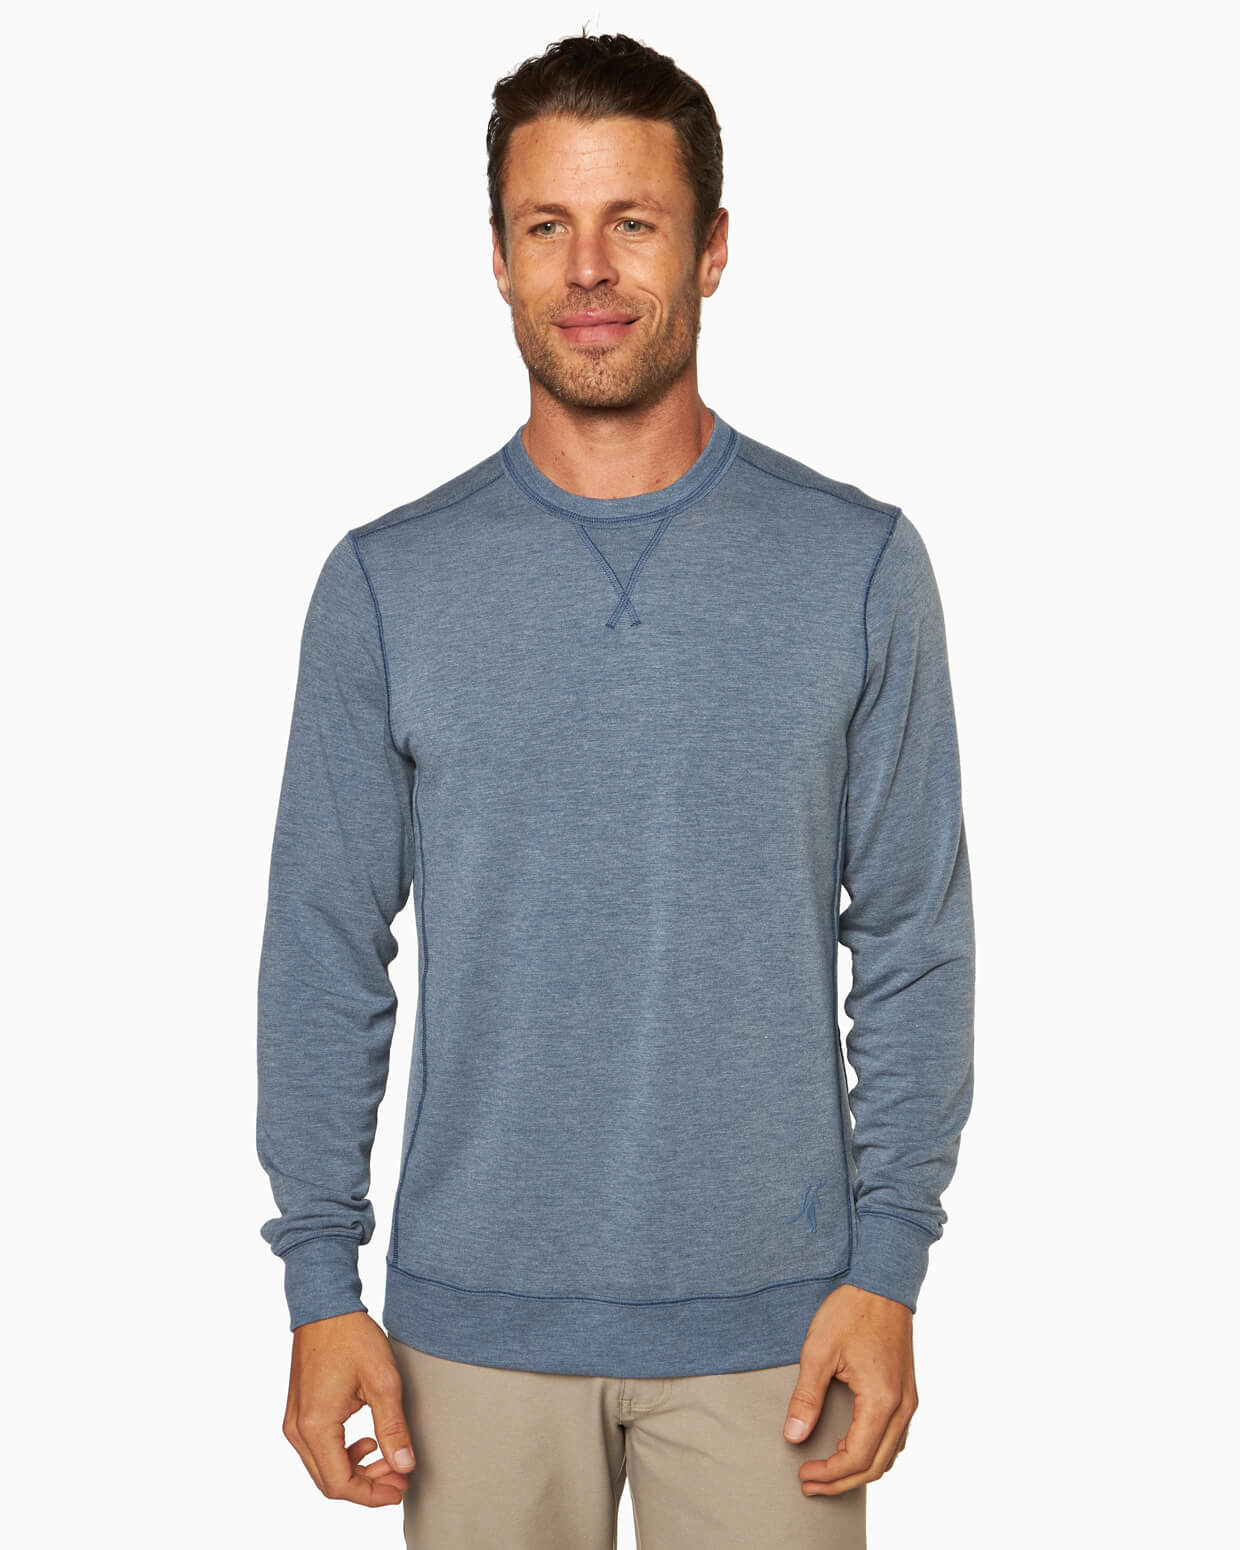 Light Long Sleeve Shirt - Pullover Sweater